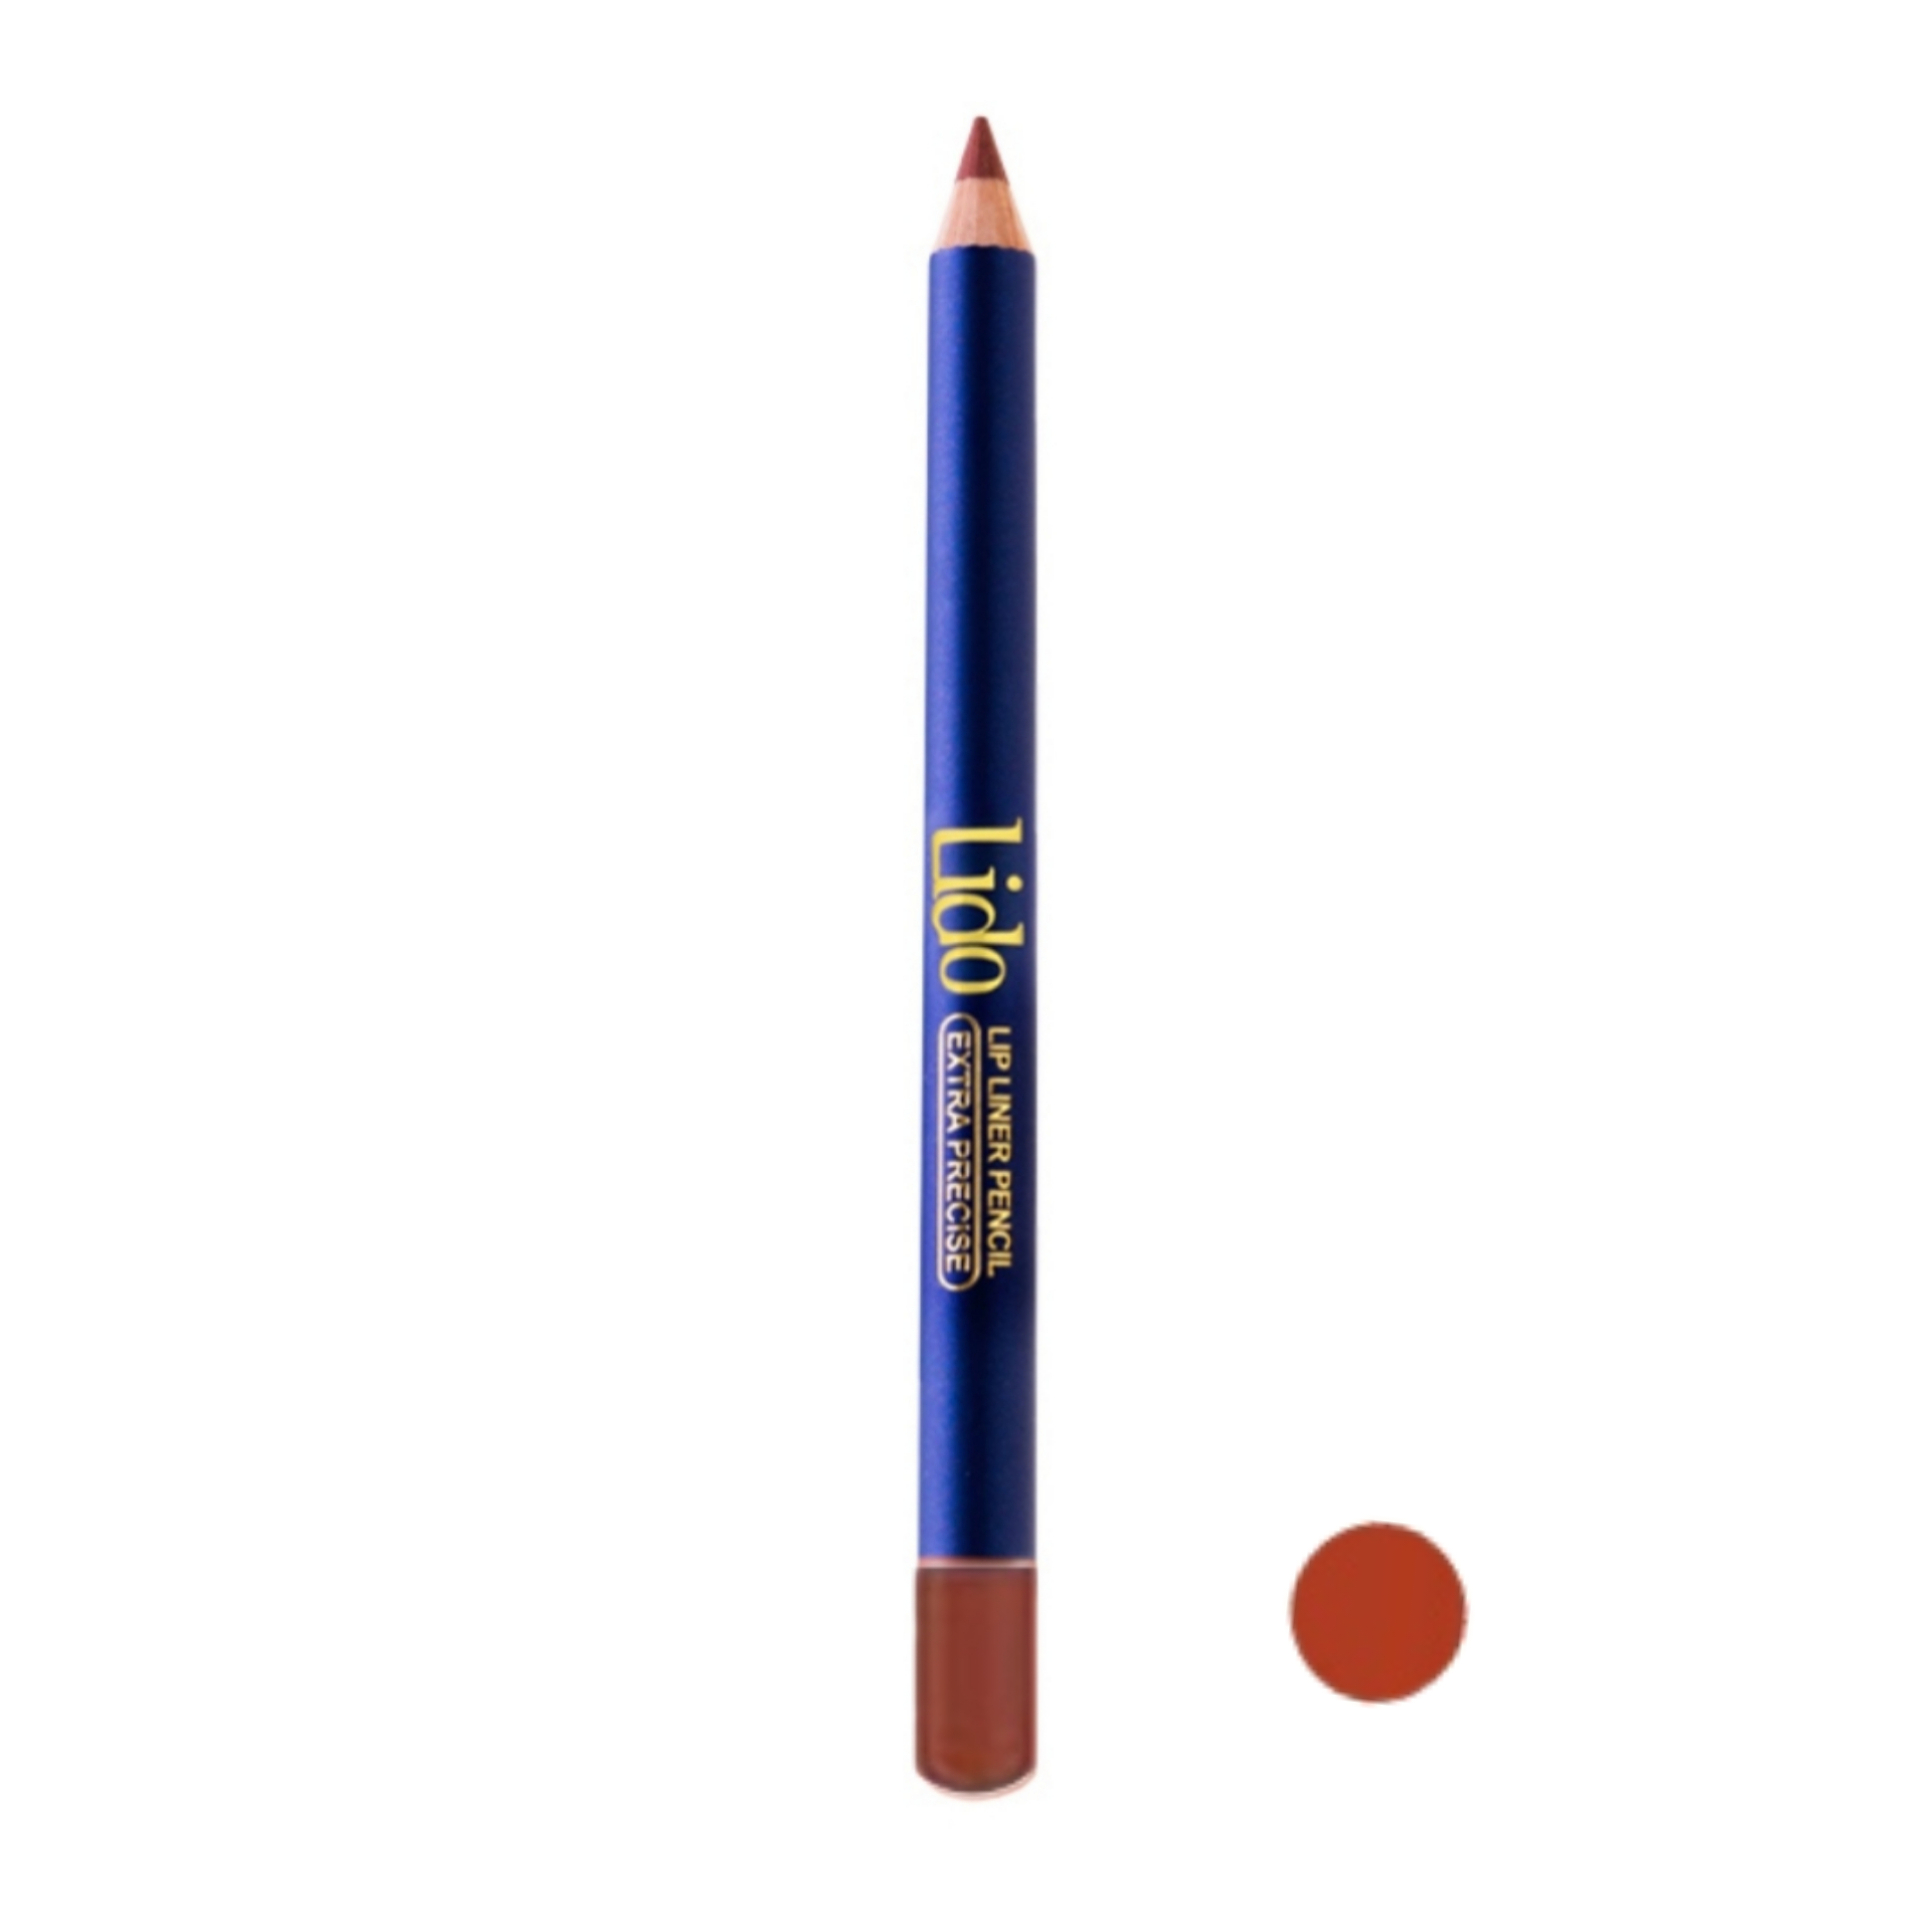 مداد لب لیدو مدل Extra precise شماره 503